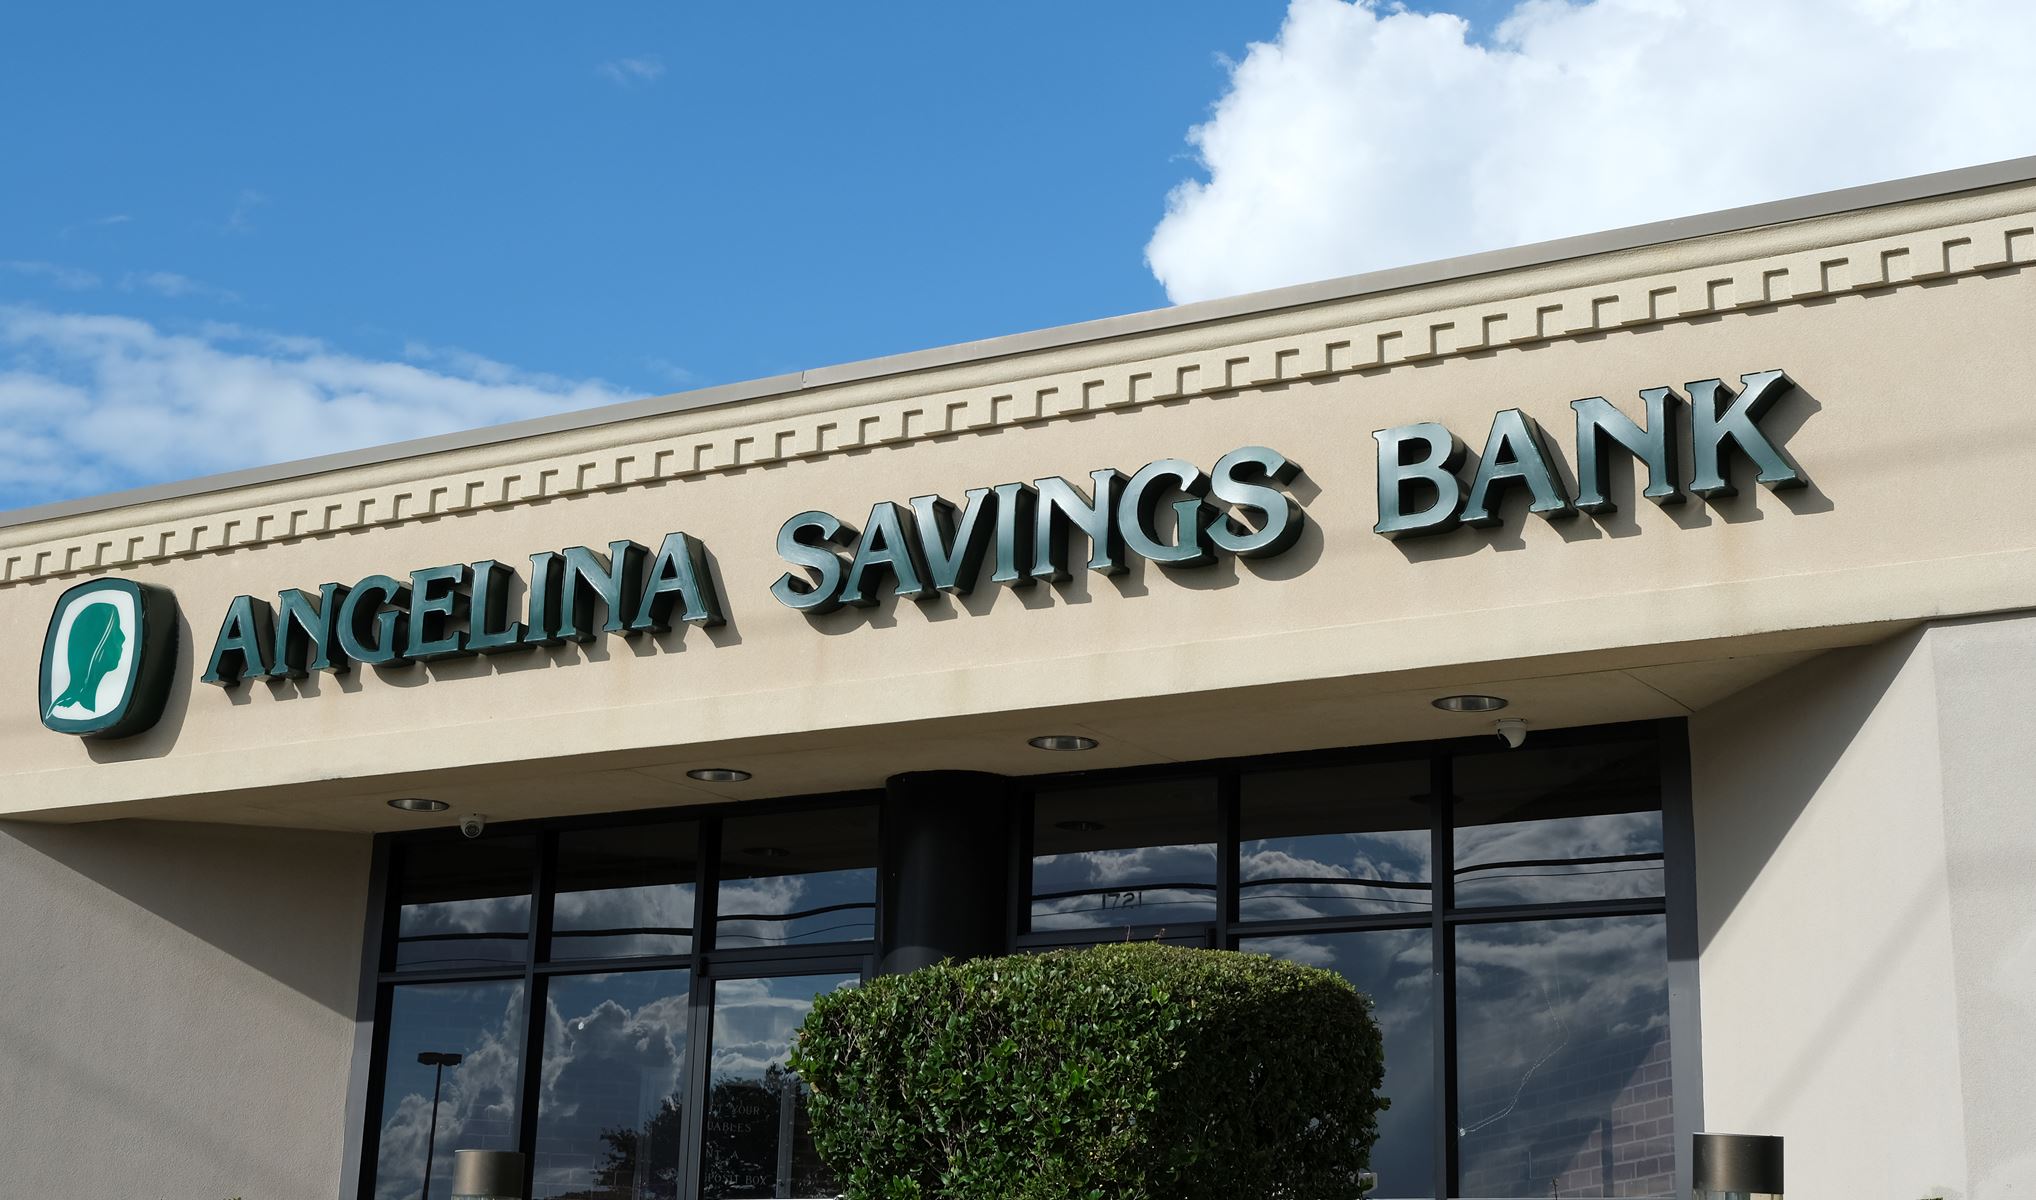 Angelina Savings Bank Building Sign